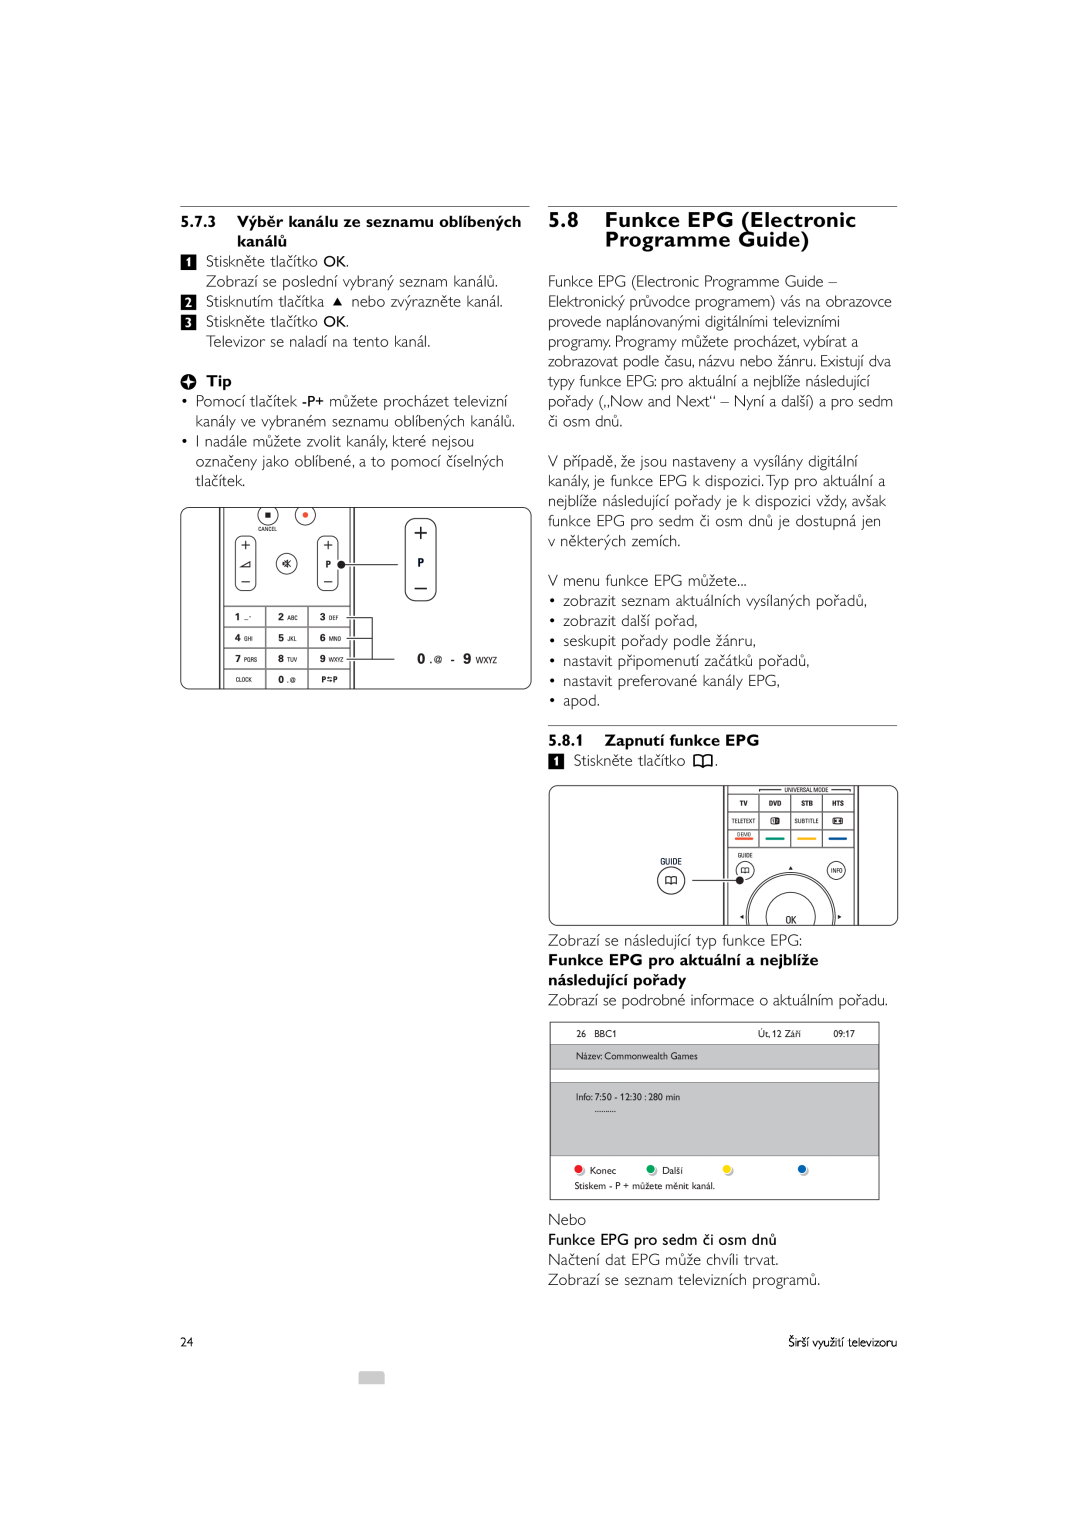 Philips 42PFL9903H/10 manual 5.8Funkce EPG Electronic Programme Guide, 5.7.3Výběr kanálu ze seznamu oblíbených kanálů, àTip 